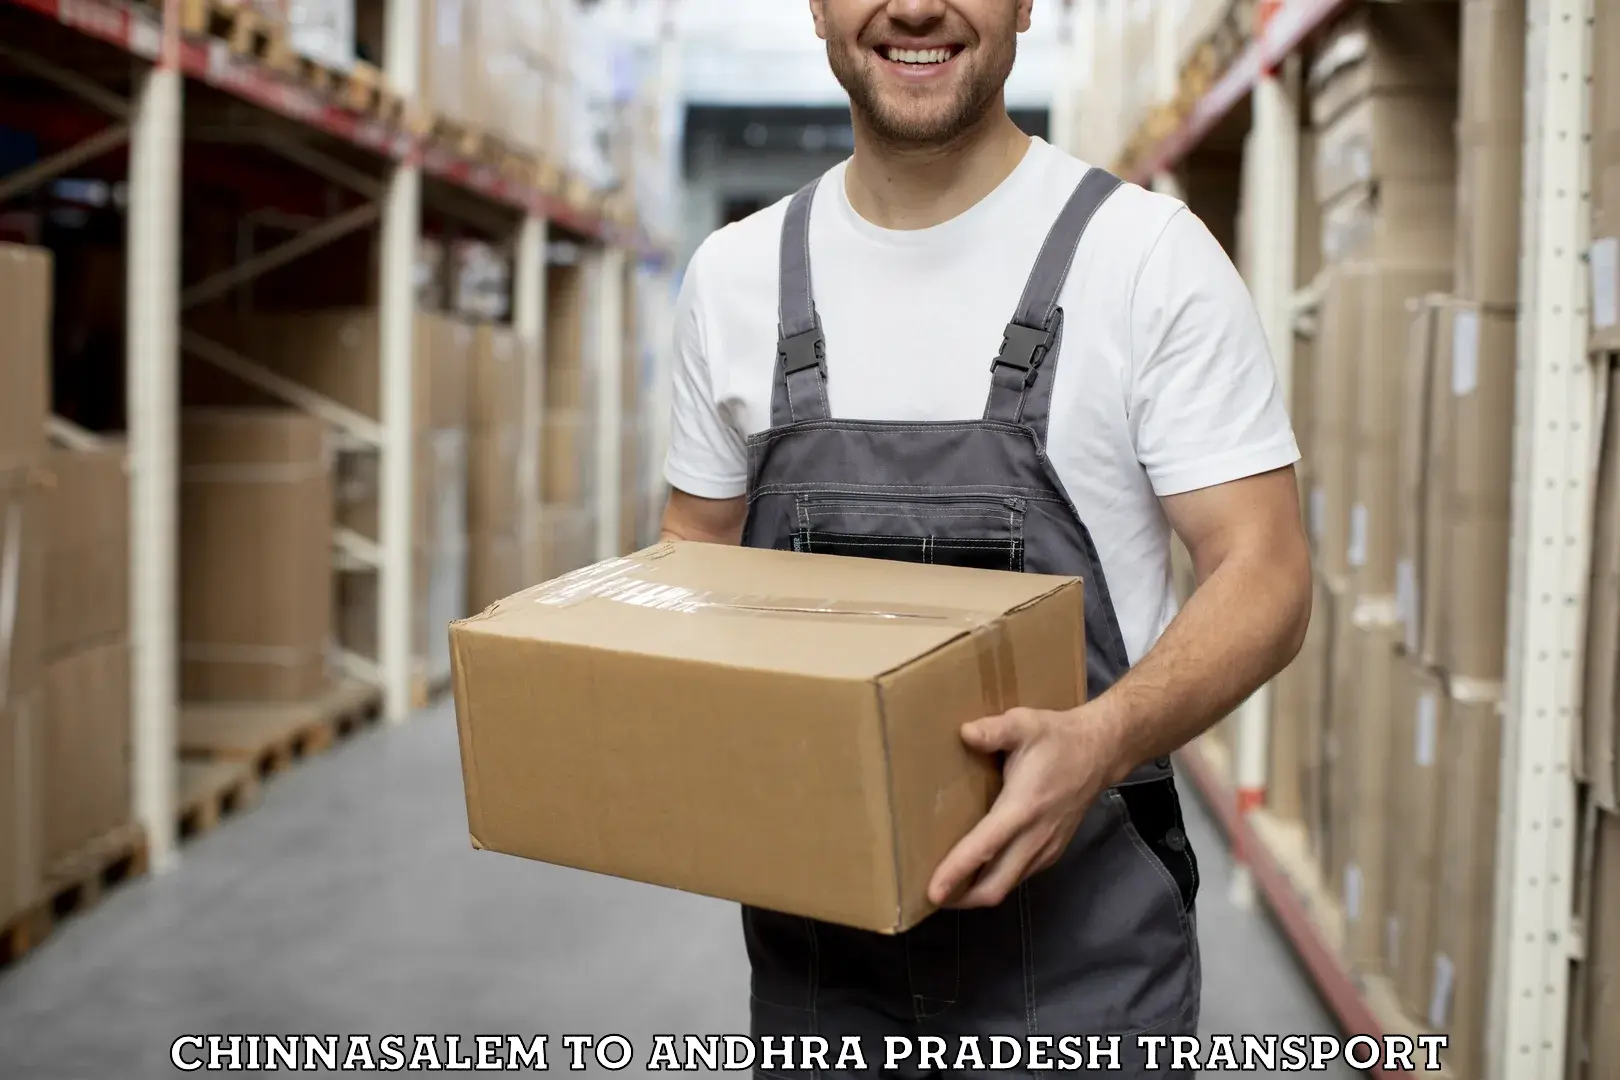 International cargo transportation services Chinnasalem to Andhra Pradesh